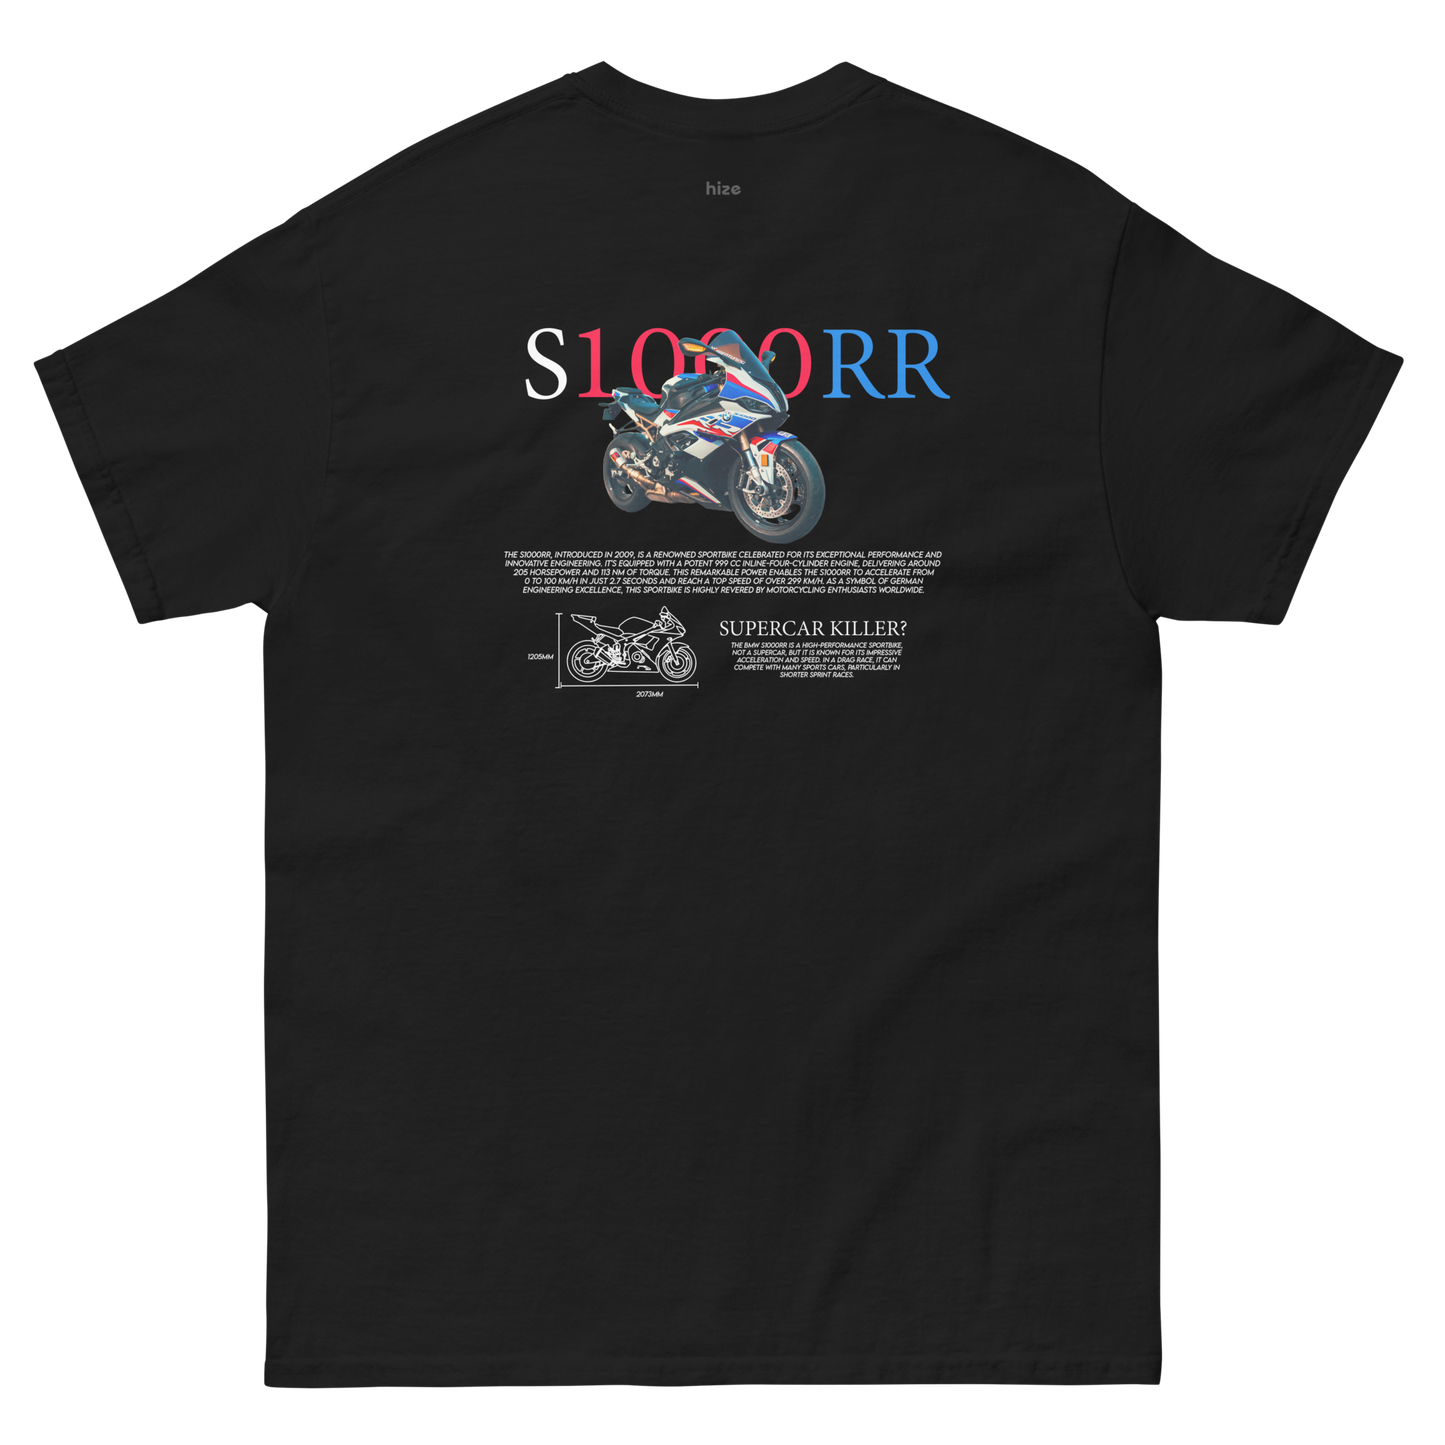 S1000RR T-shirt